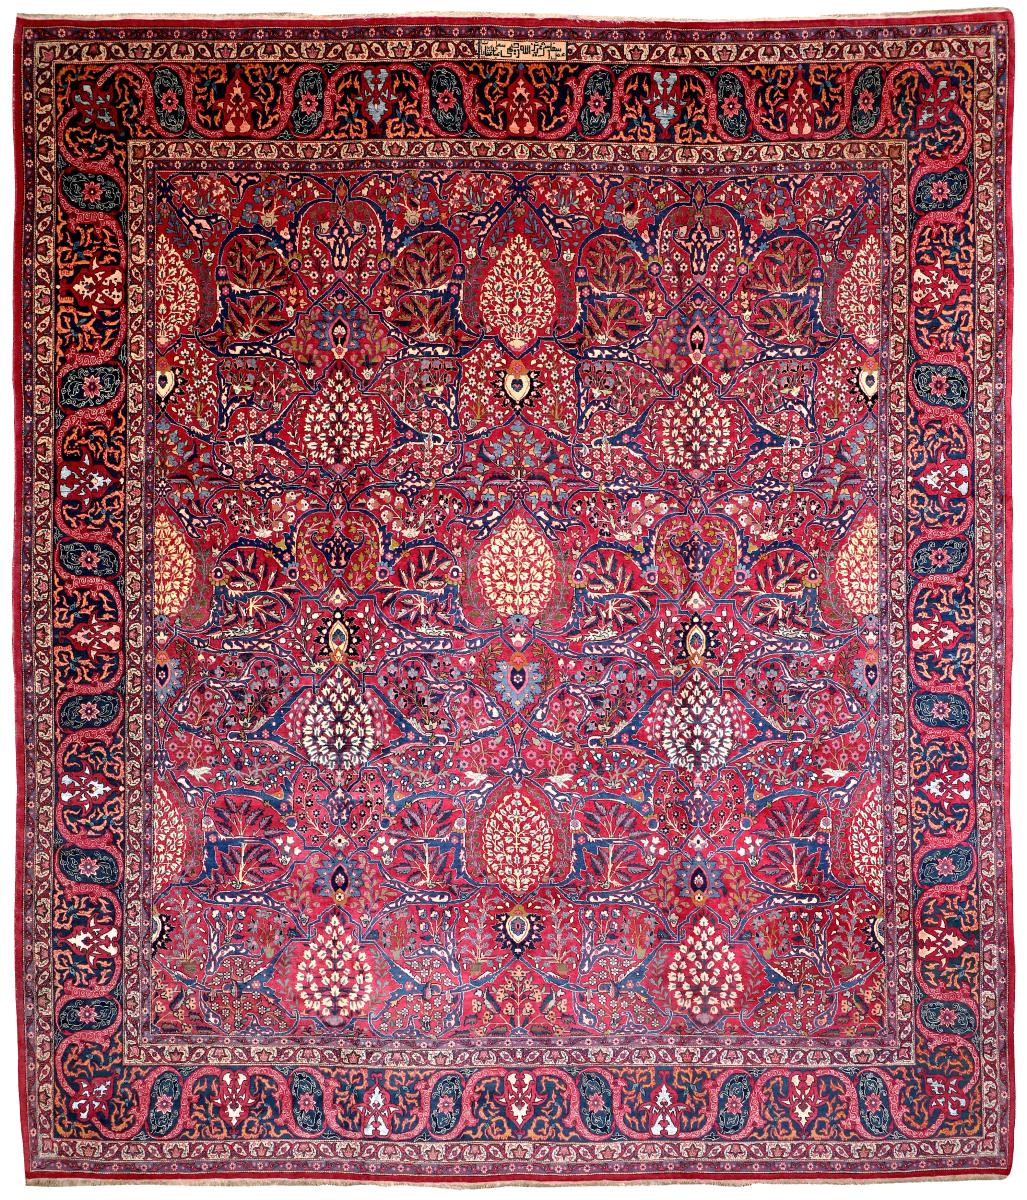 Antique Tehran carpet